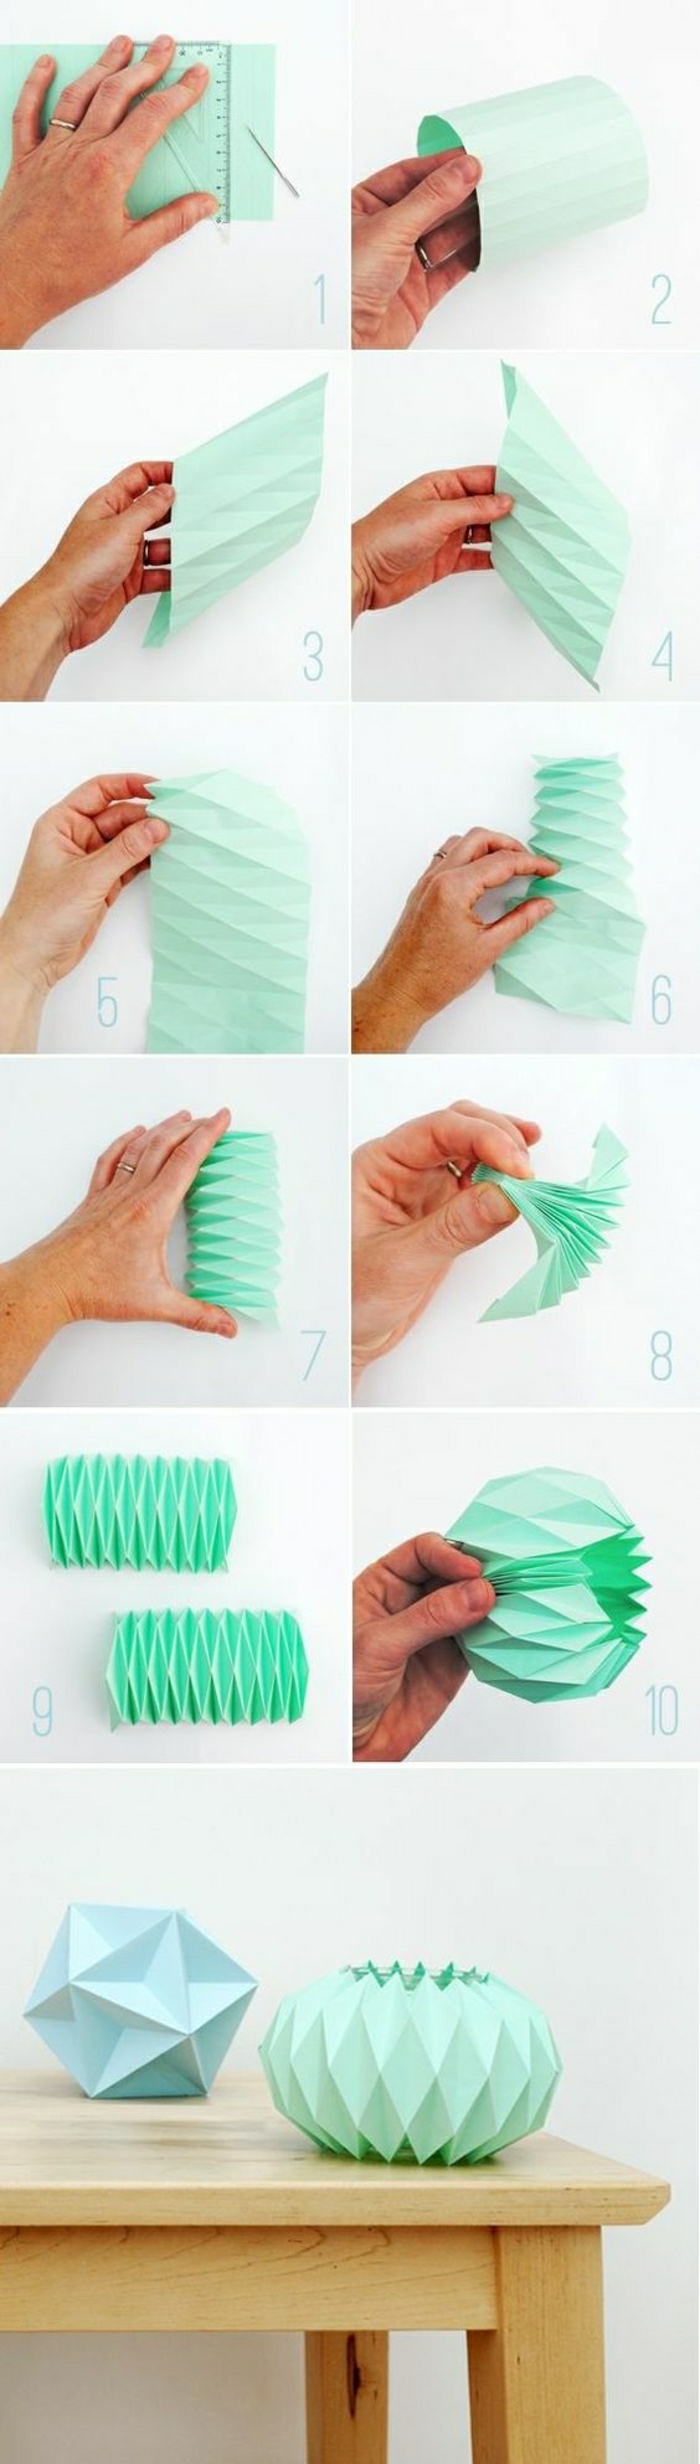 pliage-papier-coloré-pliage-origami-fleur-origami-figures-en-papier-origami